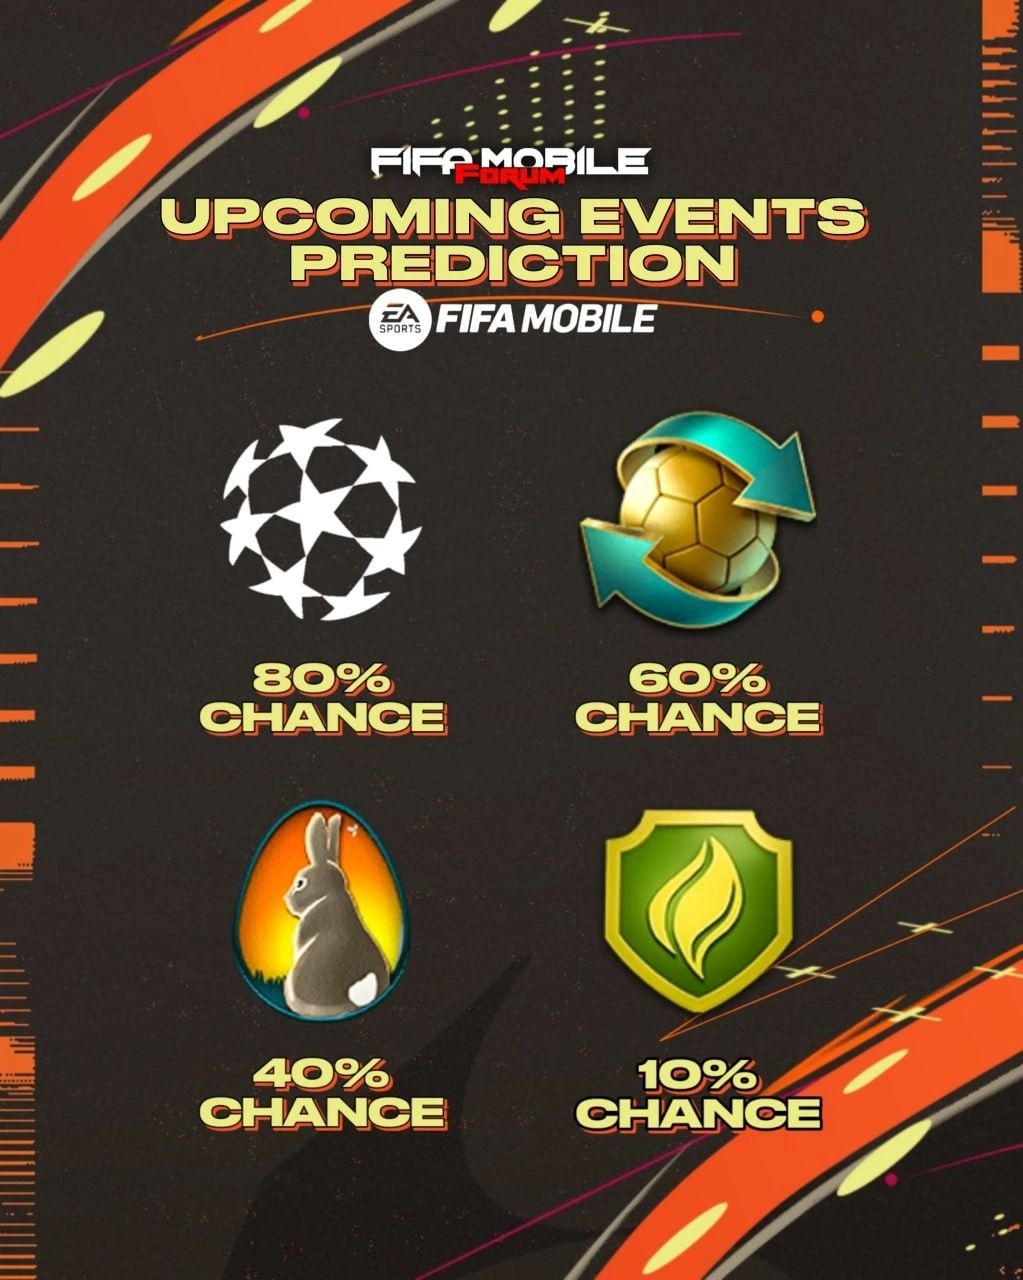 ⚡Прогнозы предстоящих событий в FIFA Mobile

🤔Какое событие по вашему мнению с большей вероятностью будет после TOTY?